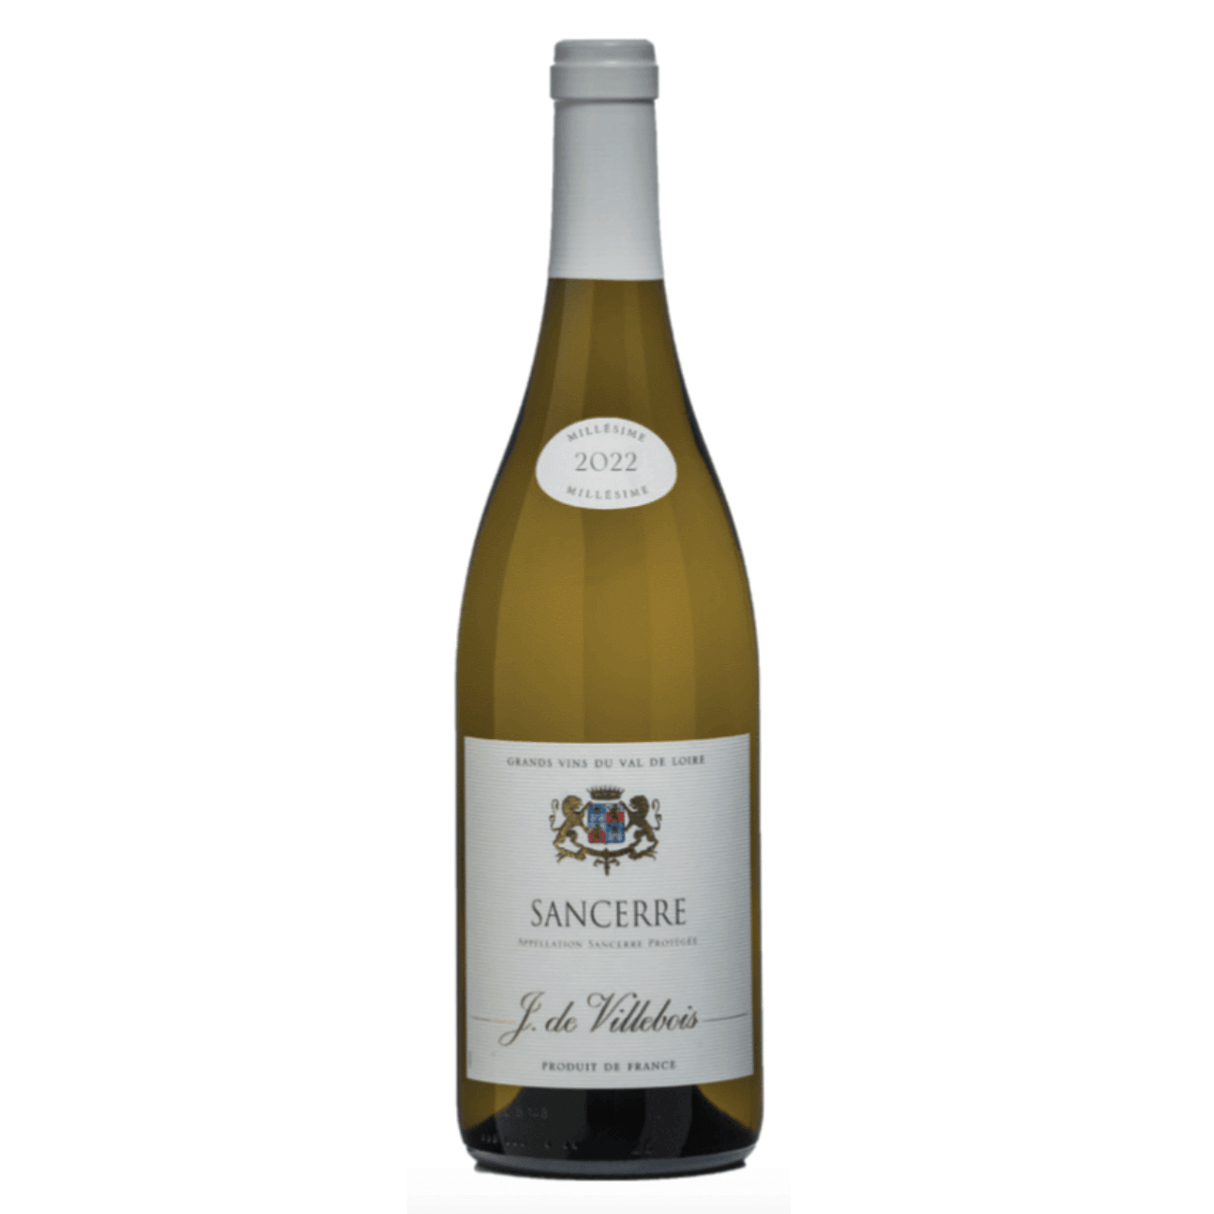 J. de Villebois Sancerre Blanc,  Loire Valley 2022 (12 bottles)